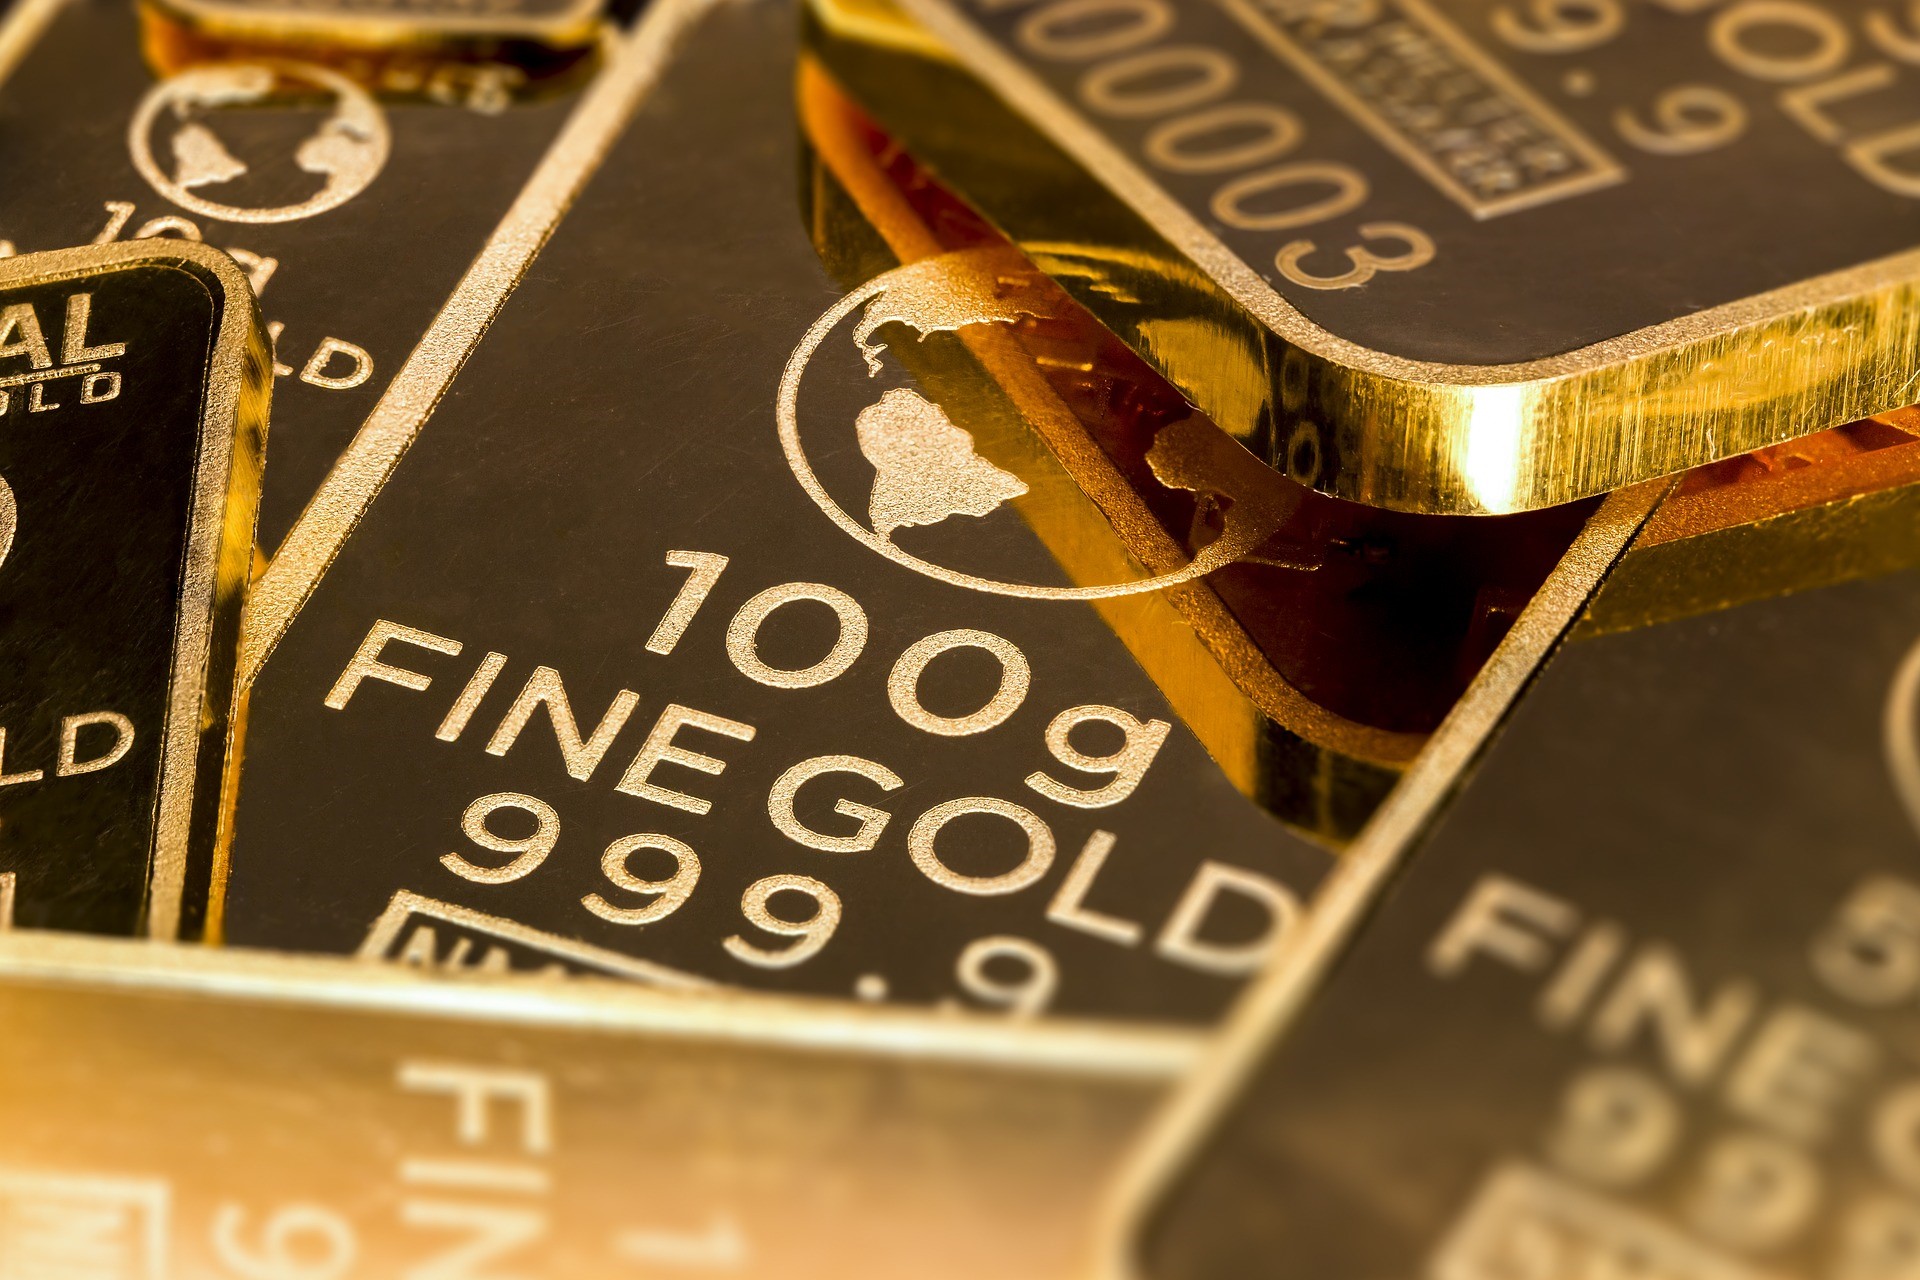 The Royal Mint tillkännagav idag att de har samarbetat med Quintet Private Bank för att införa användningen av återvunnet guld i en börshandlad råvara (ETC). Royal Mint Physical Gold ETC – noterat på London Stock Exchange med tickern "RMAU" – kommer nu delvis att backas upp av tackor gjorda av återvunnet guld, vilket gör det till världens första guld ETC eller börshandlade fond (ETF) någonsin uppbackad av återvunna guldtackor, enligt forskning utförd av HANetf.